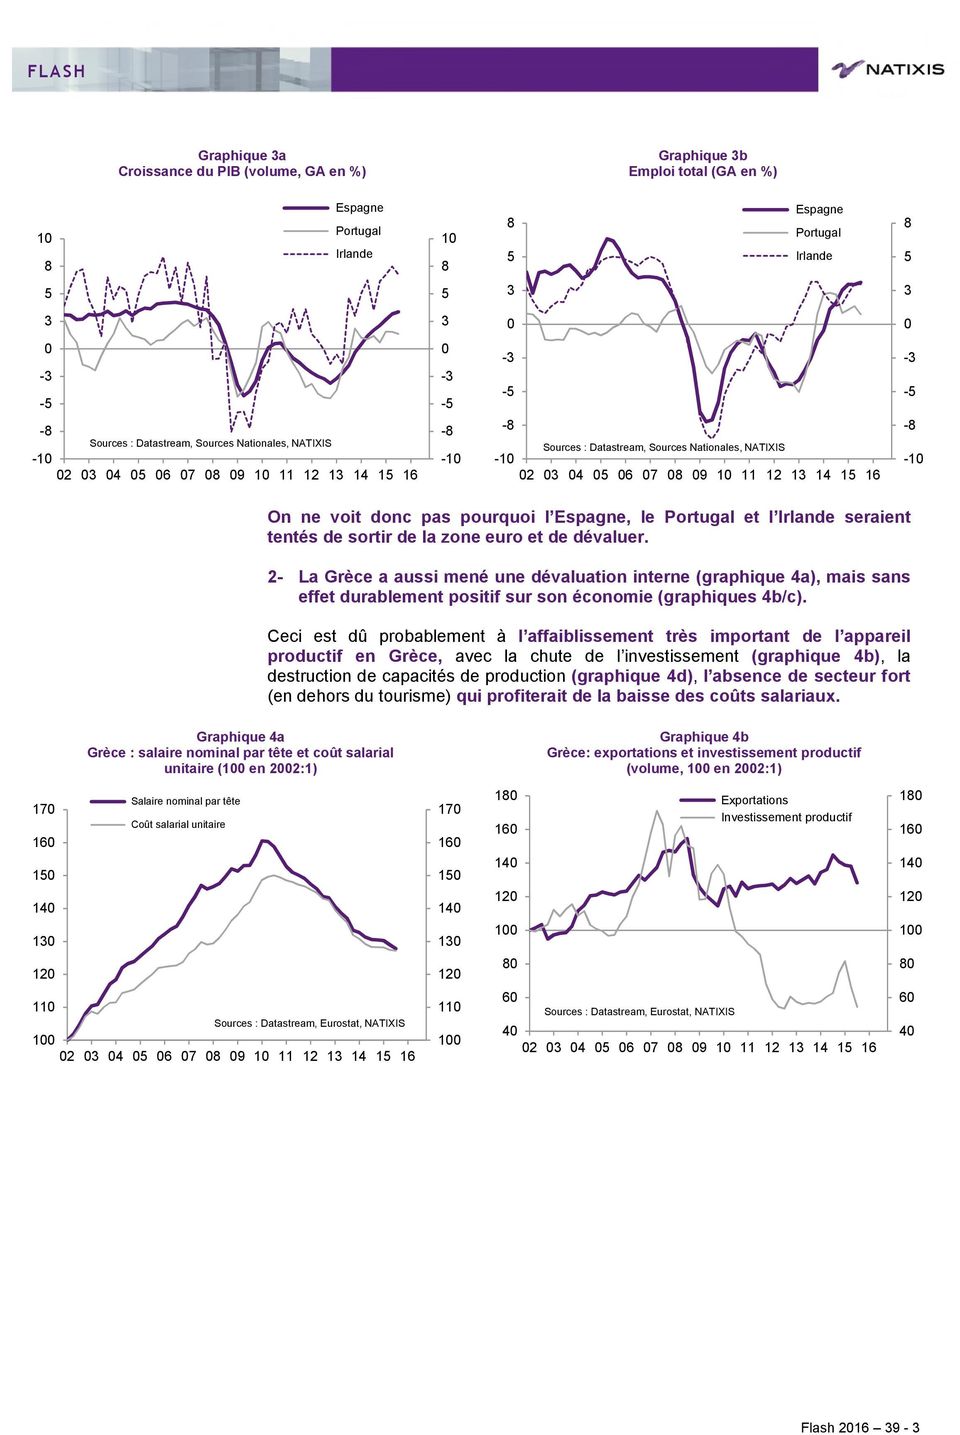 - La Grèce a aussi mené une dévaluation interne (graphique a), mais sans effet durablement positif sur son économie (graphiques b/c).